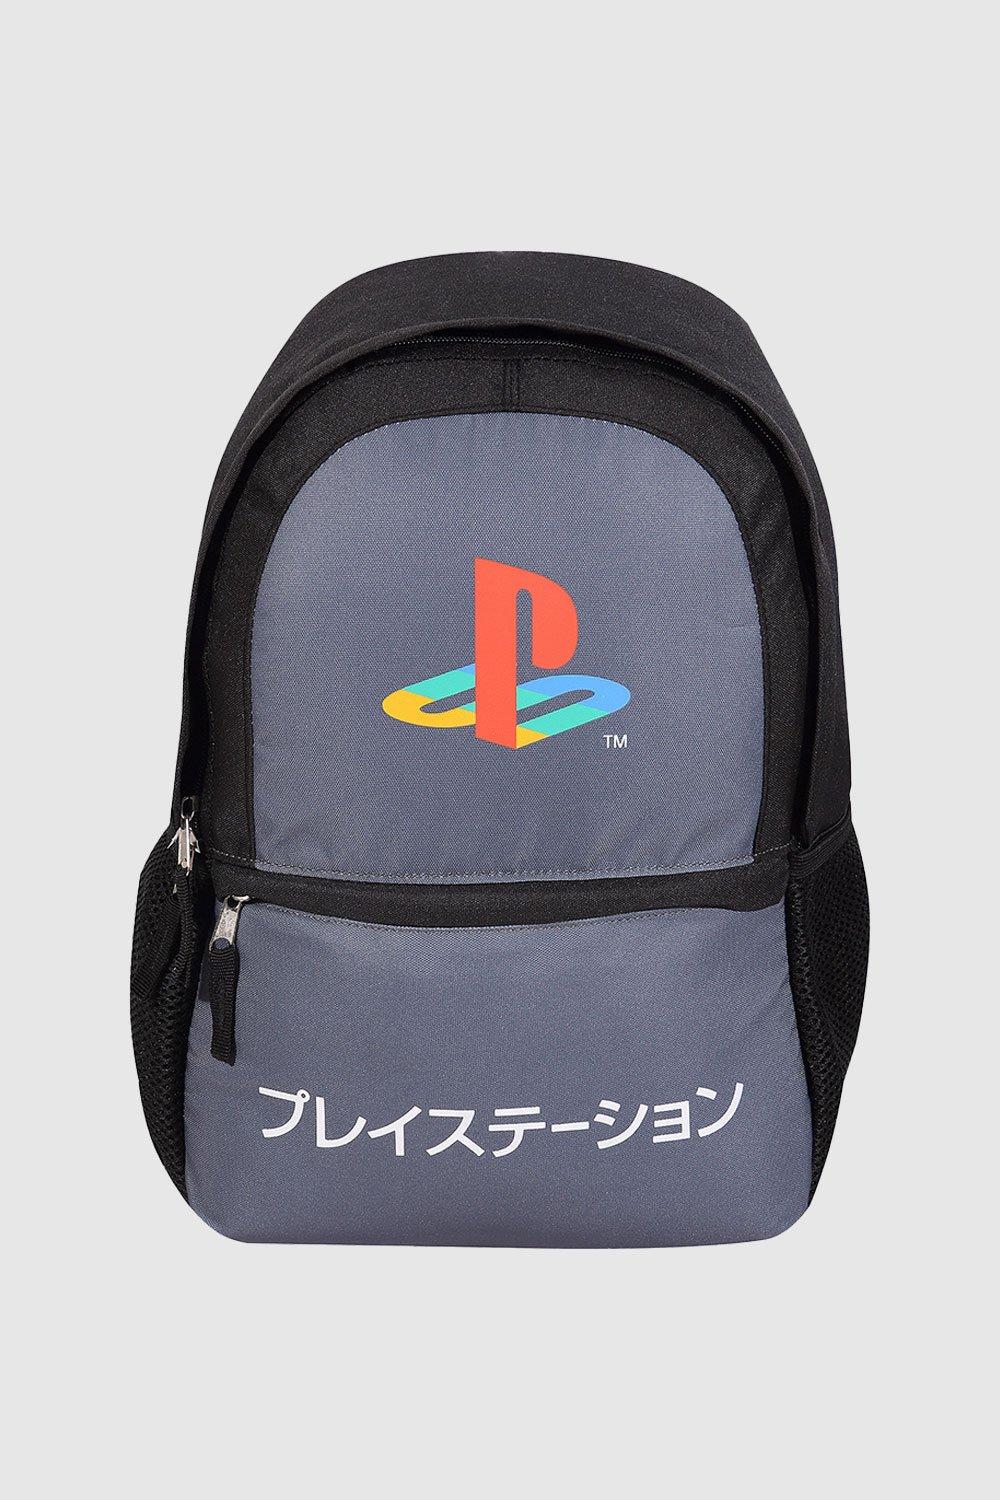 Рюкзак с контрастным логотипом Playstation, серый